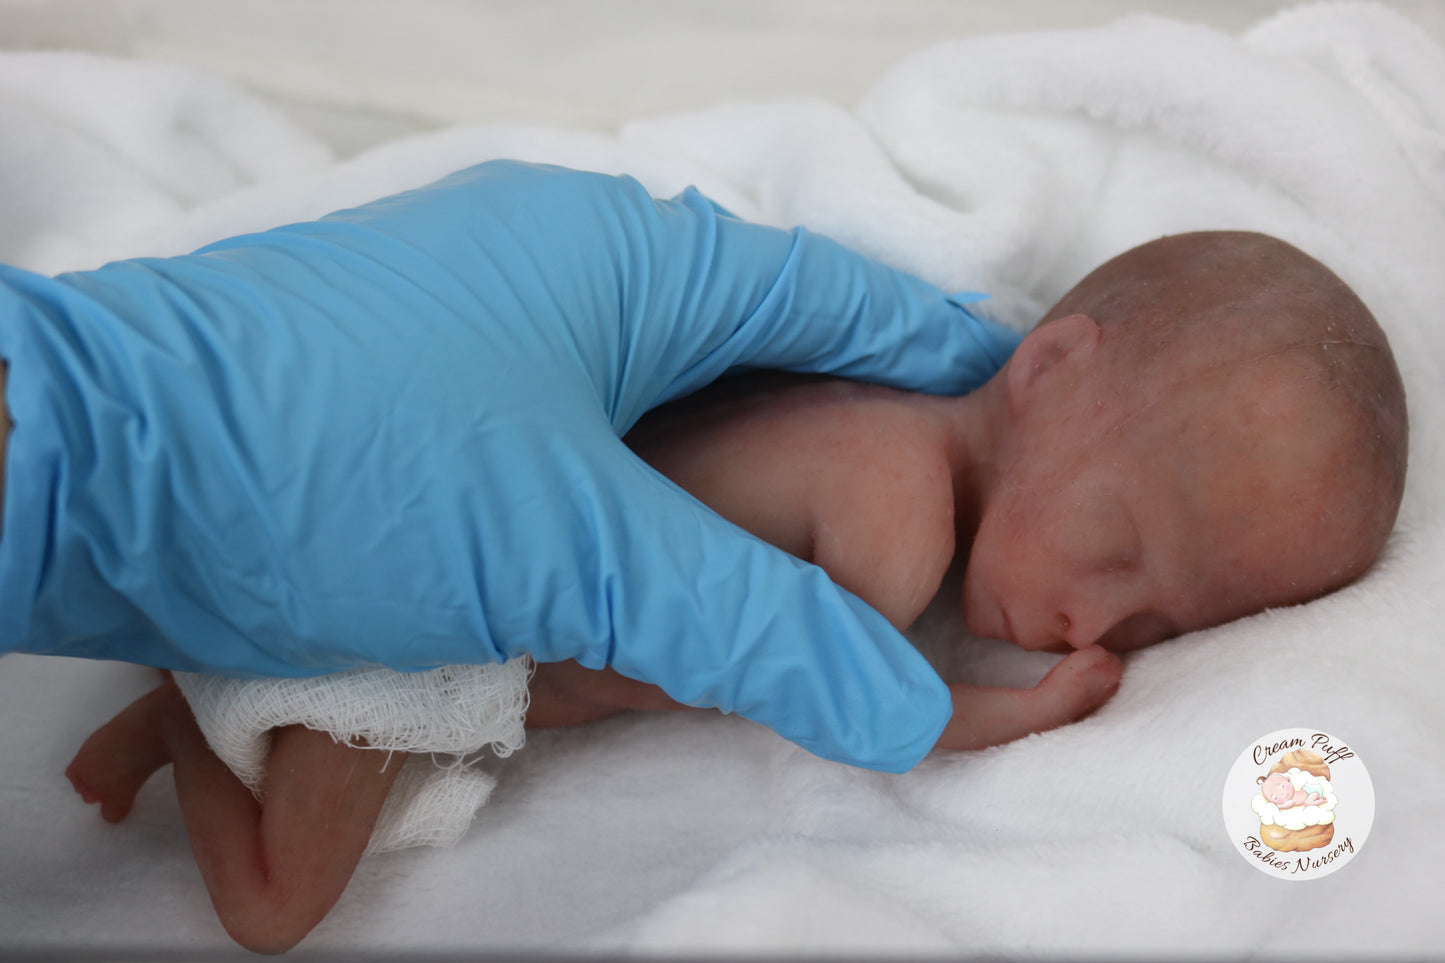 Silicone Micro Preemie Baby Girl Memorial Doll 17-18 week gestation